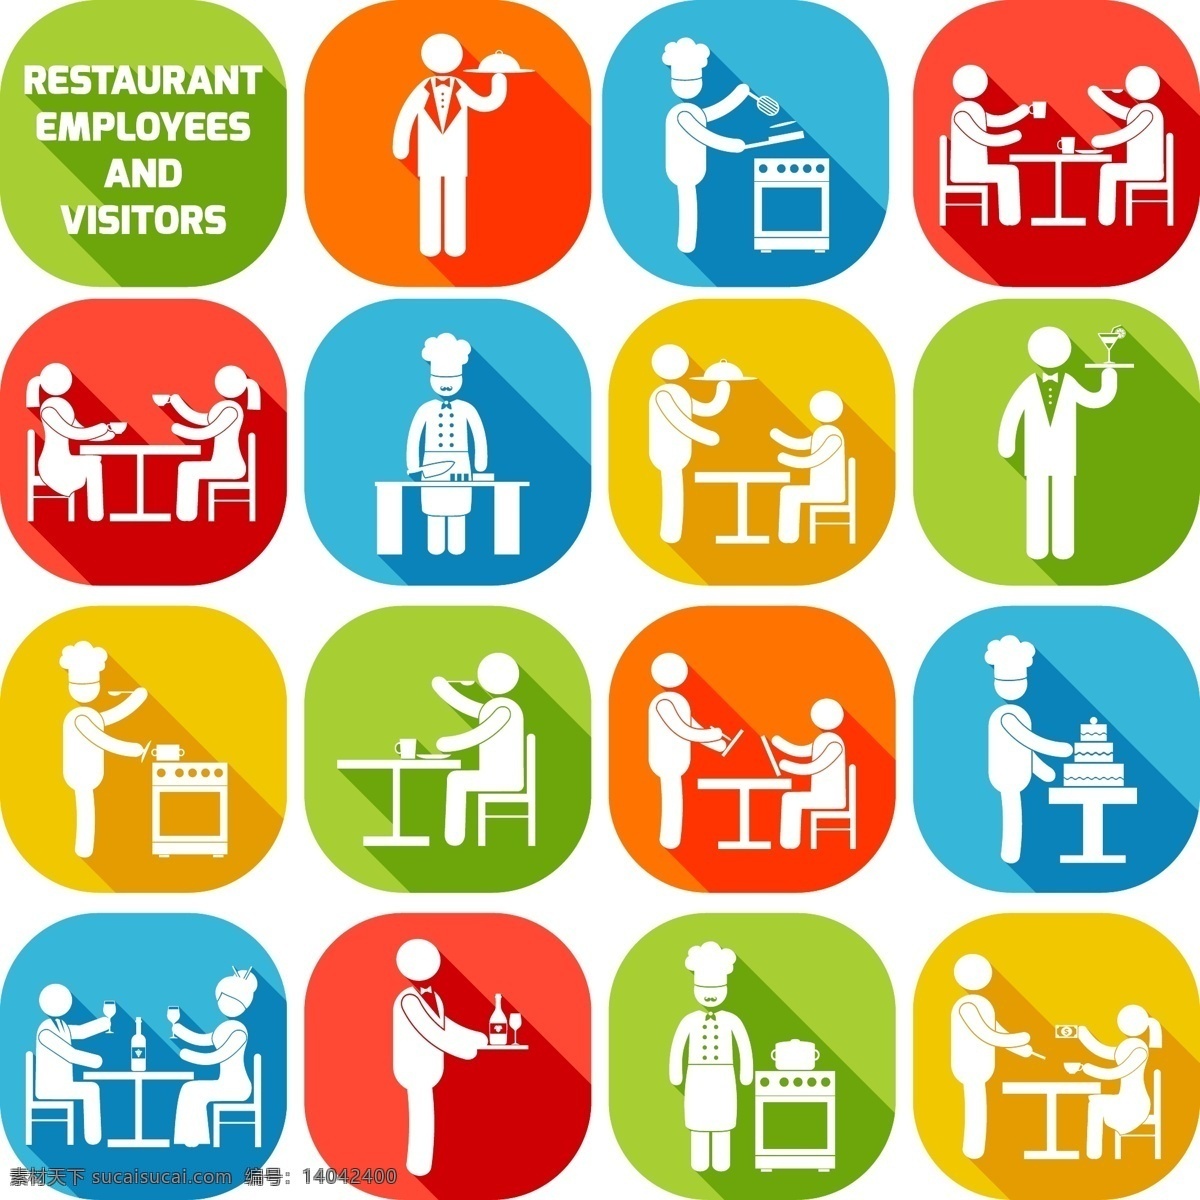 餐厅 图标 矢量 人物 服务生 厨师 顾客 餐具 厨具 高清图片